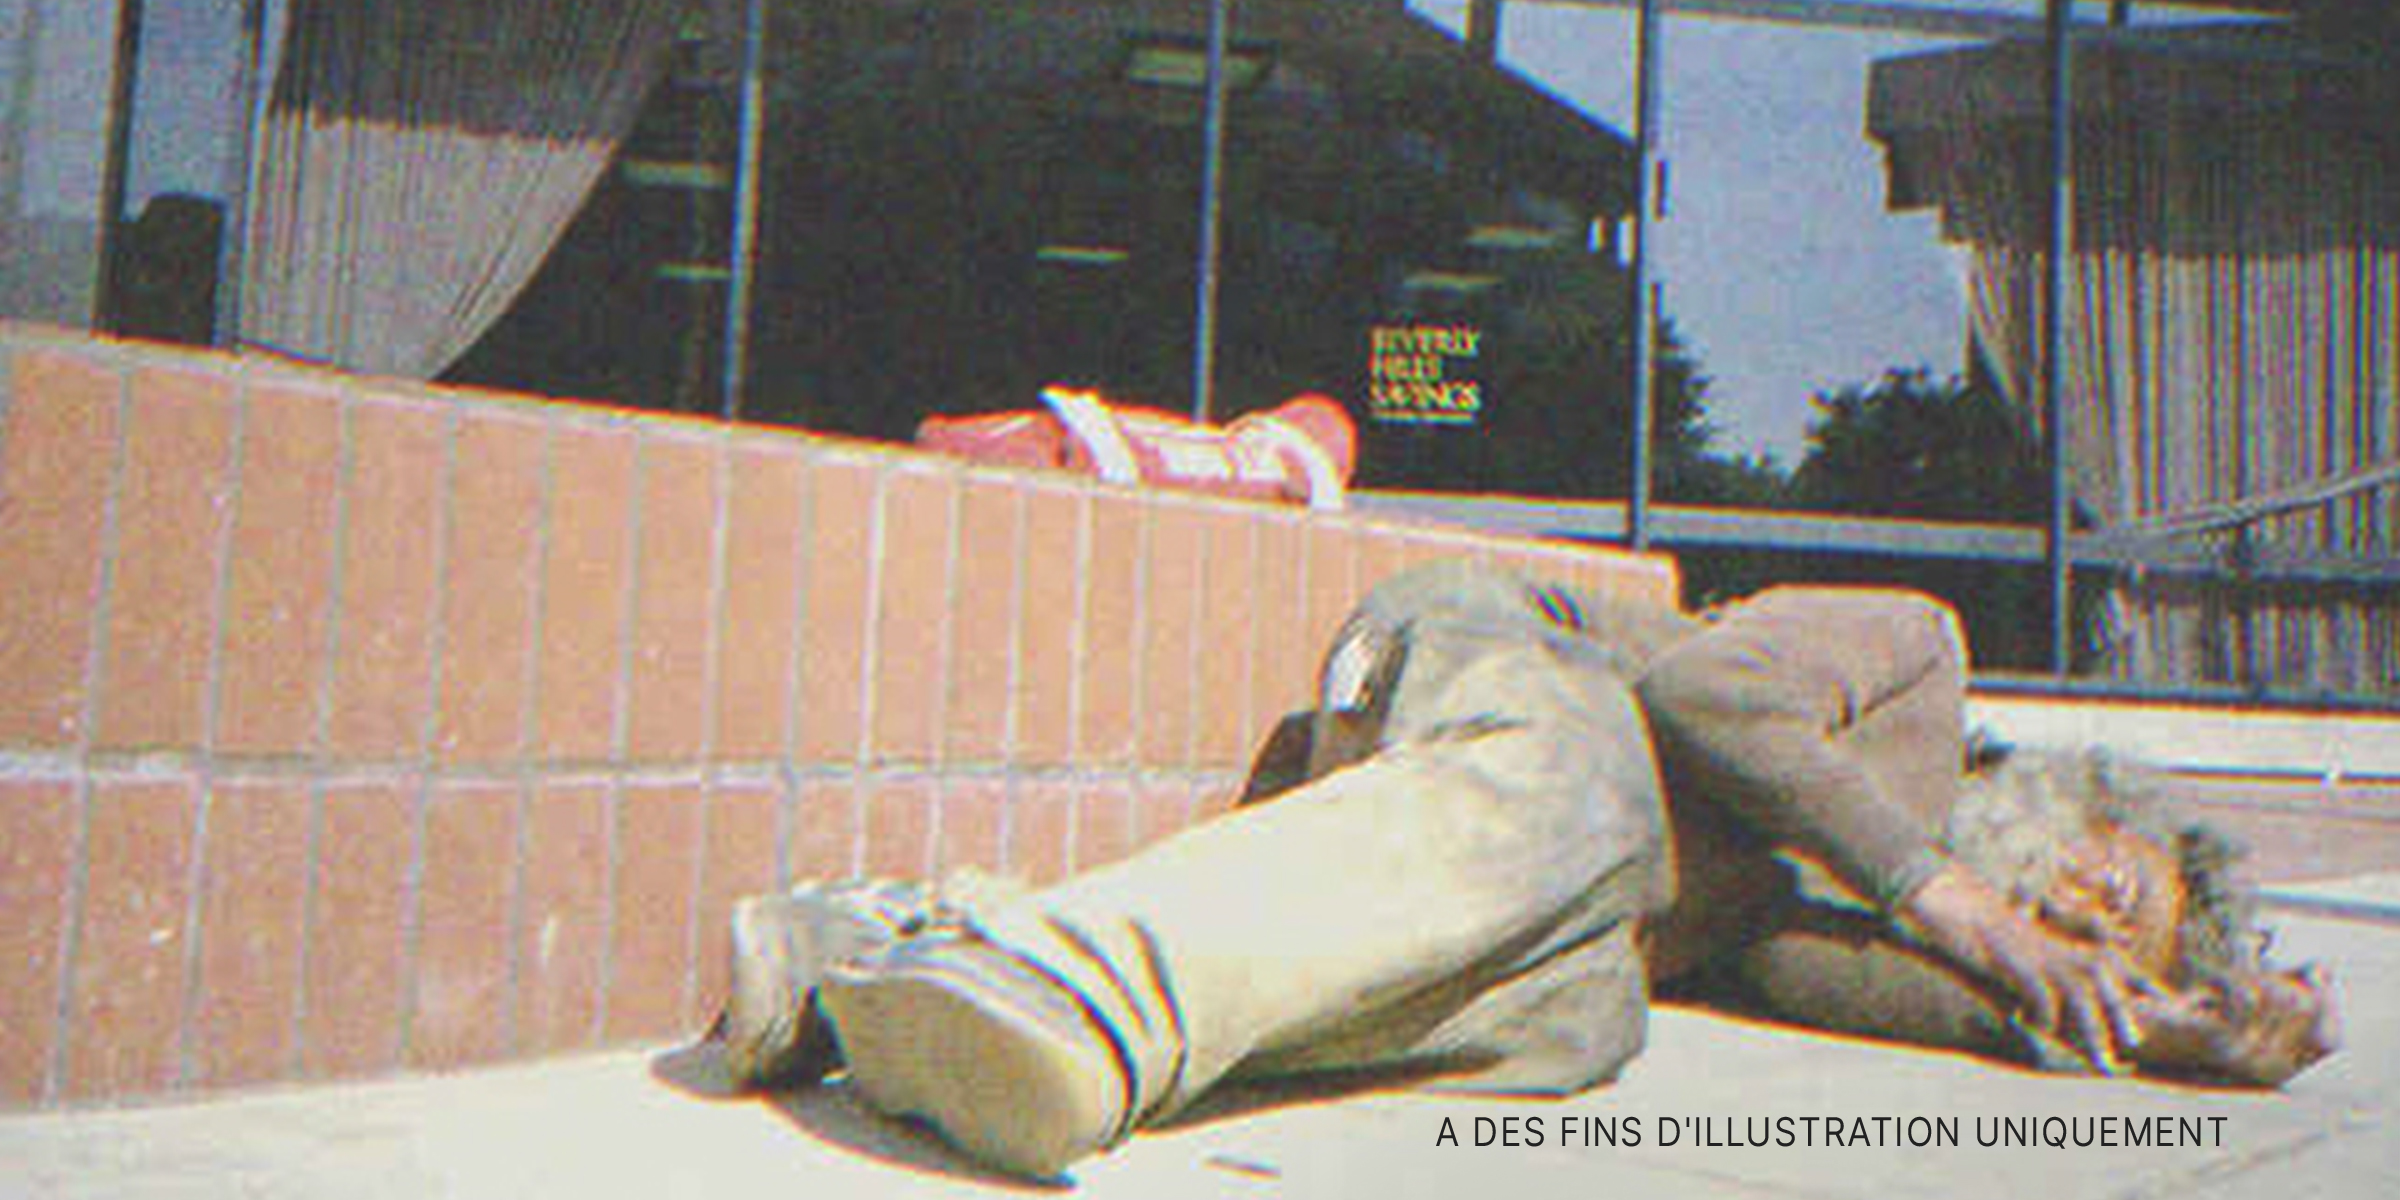 Un sans-abri dort sur le trottoir. | Source : Shutterstock.com